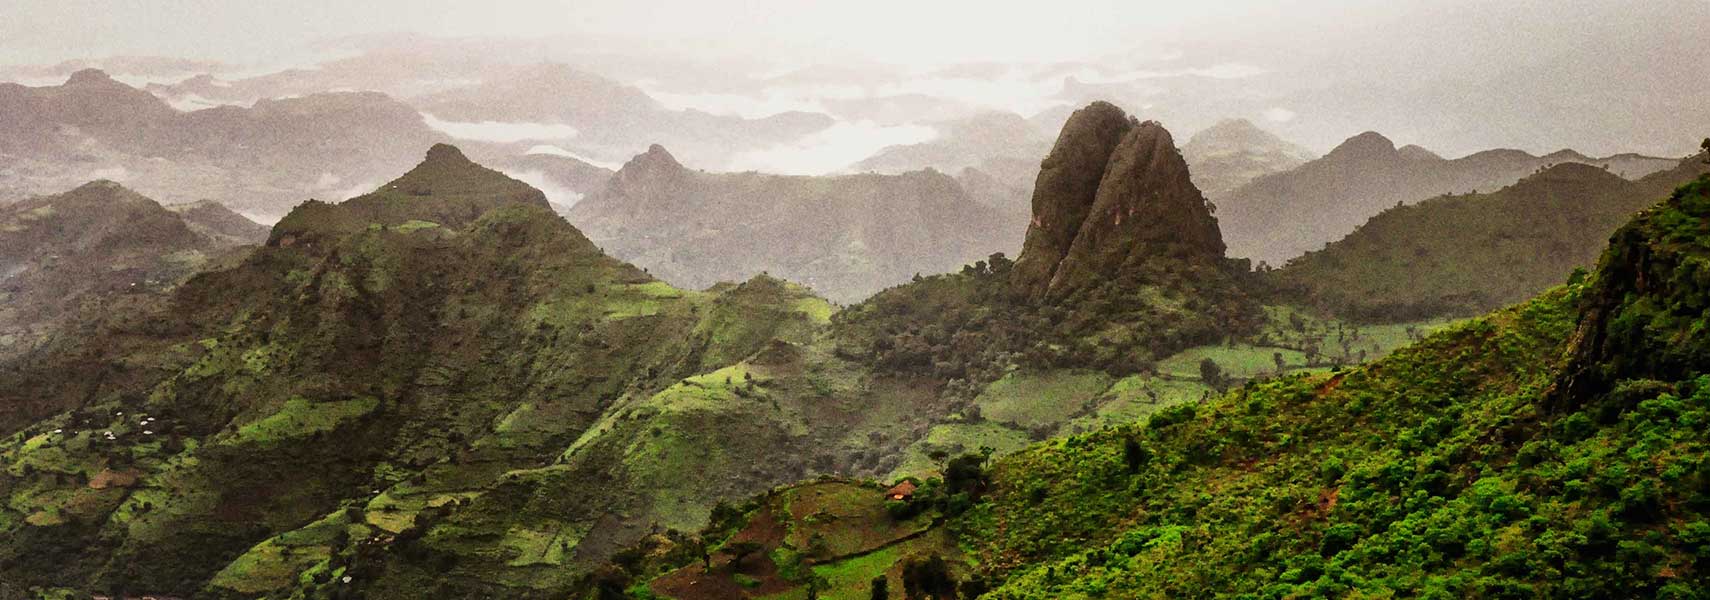 Semien Mountains, Ethiopia